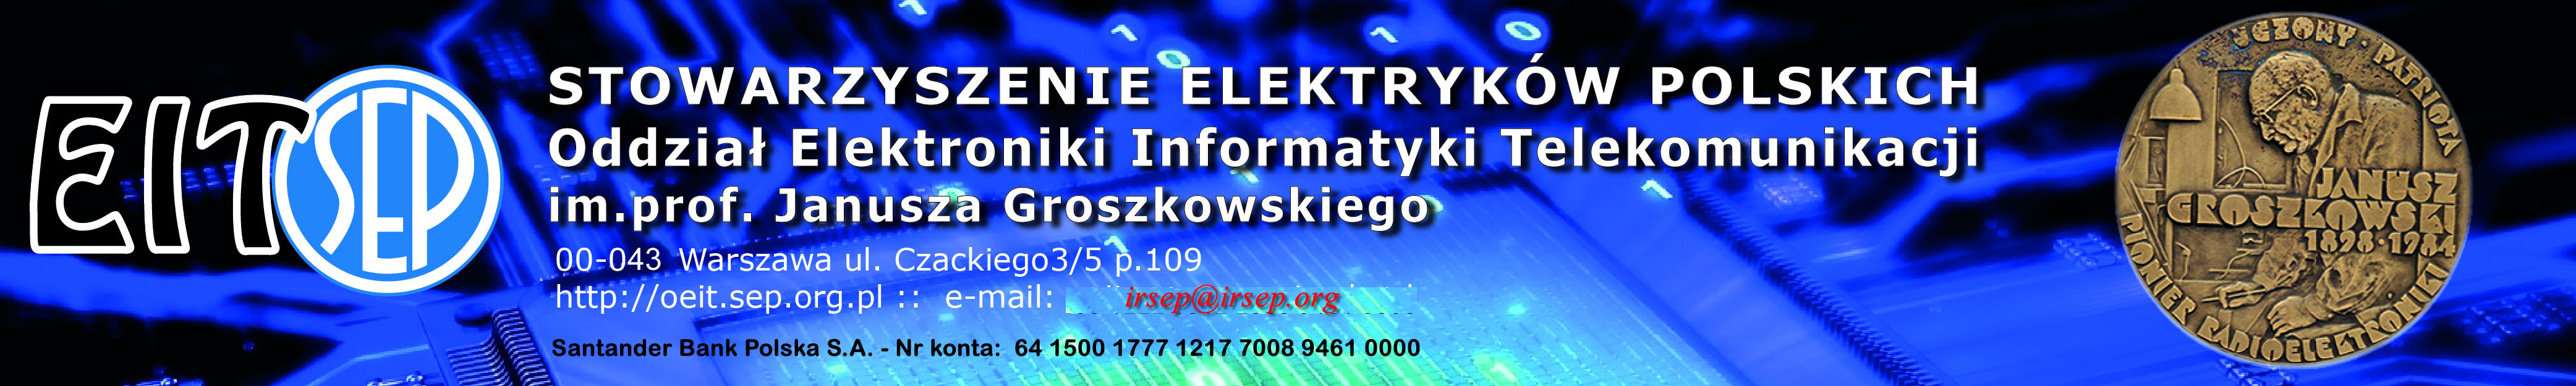 Oddział Elektroniki Informatyki Telekomunikacji